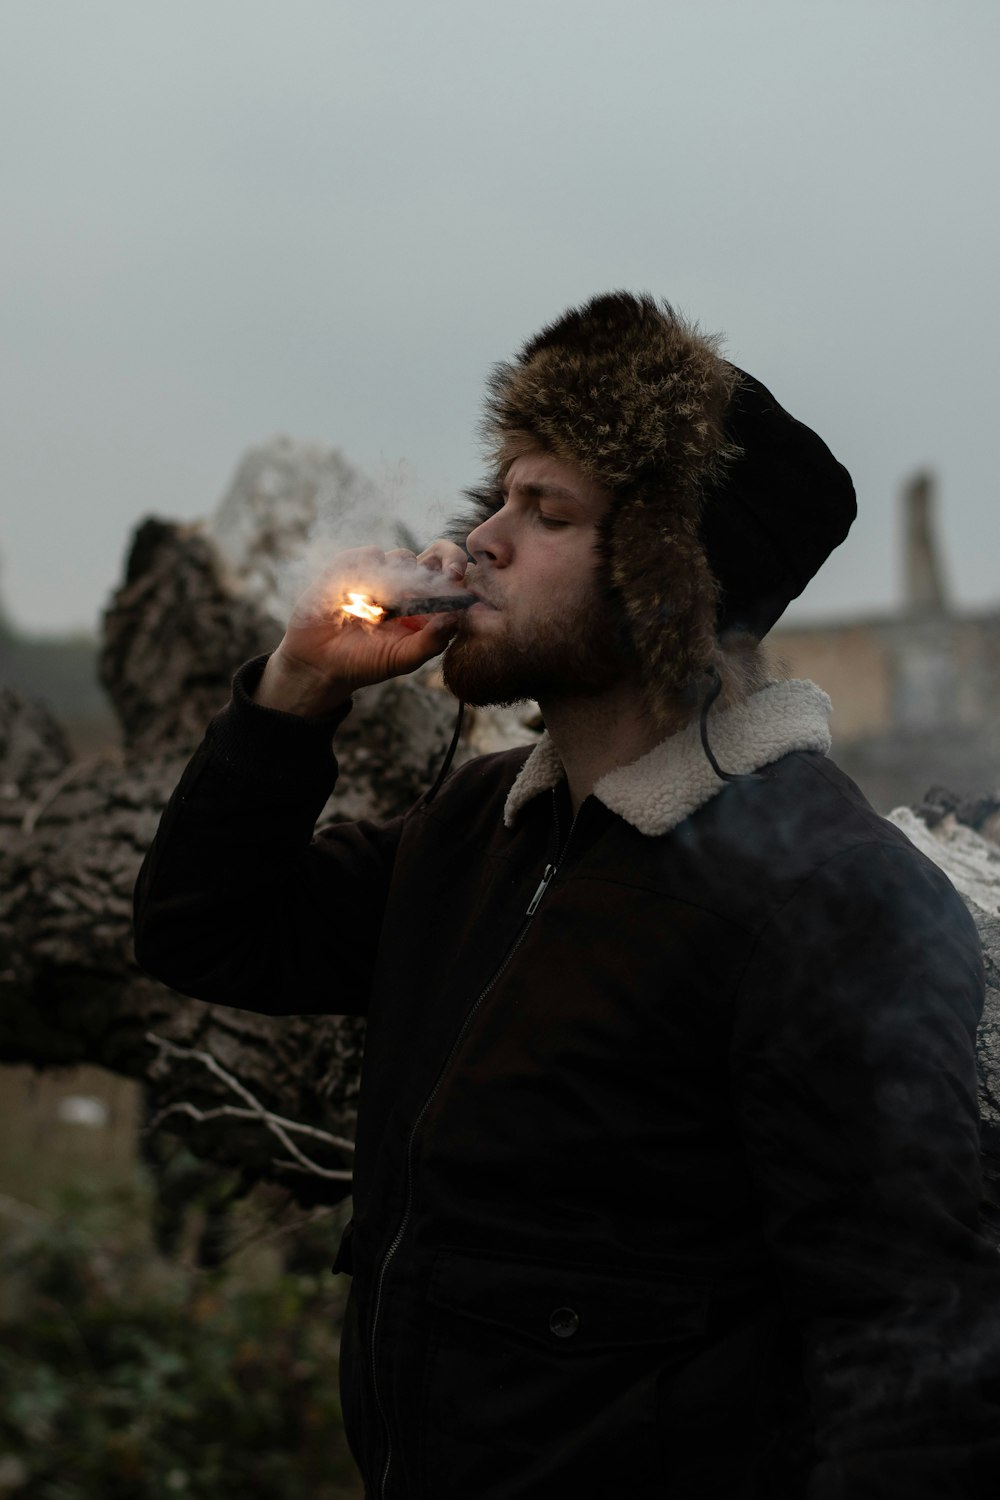 man in black jacket smoking cigarette